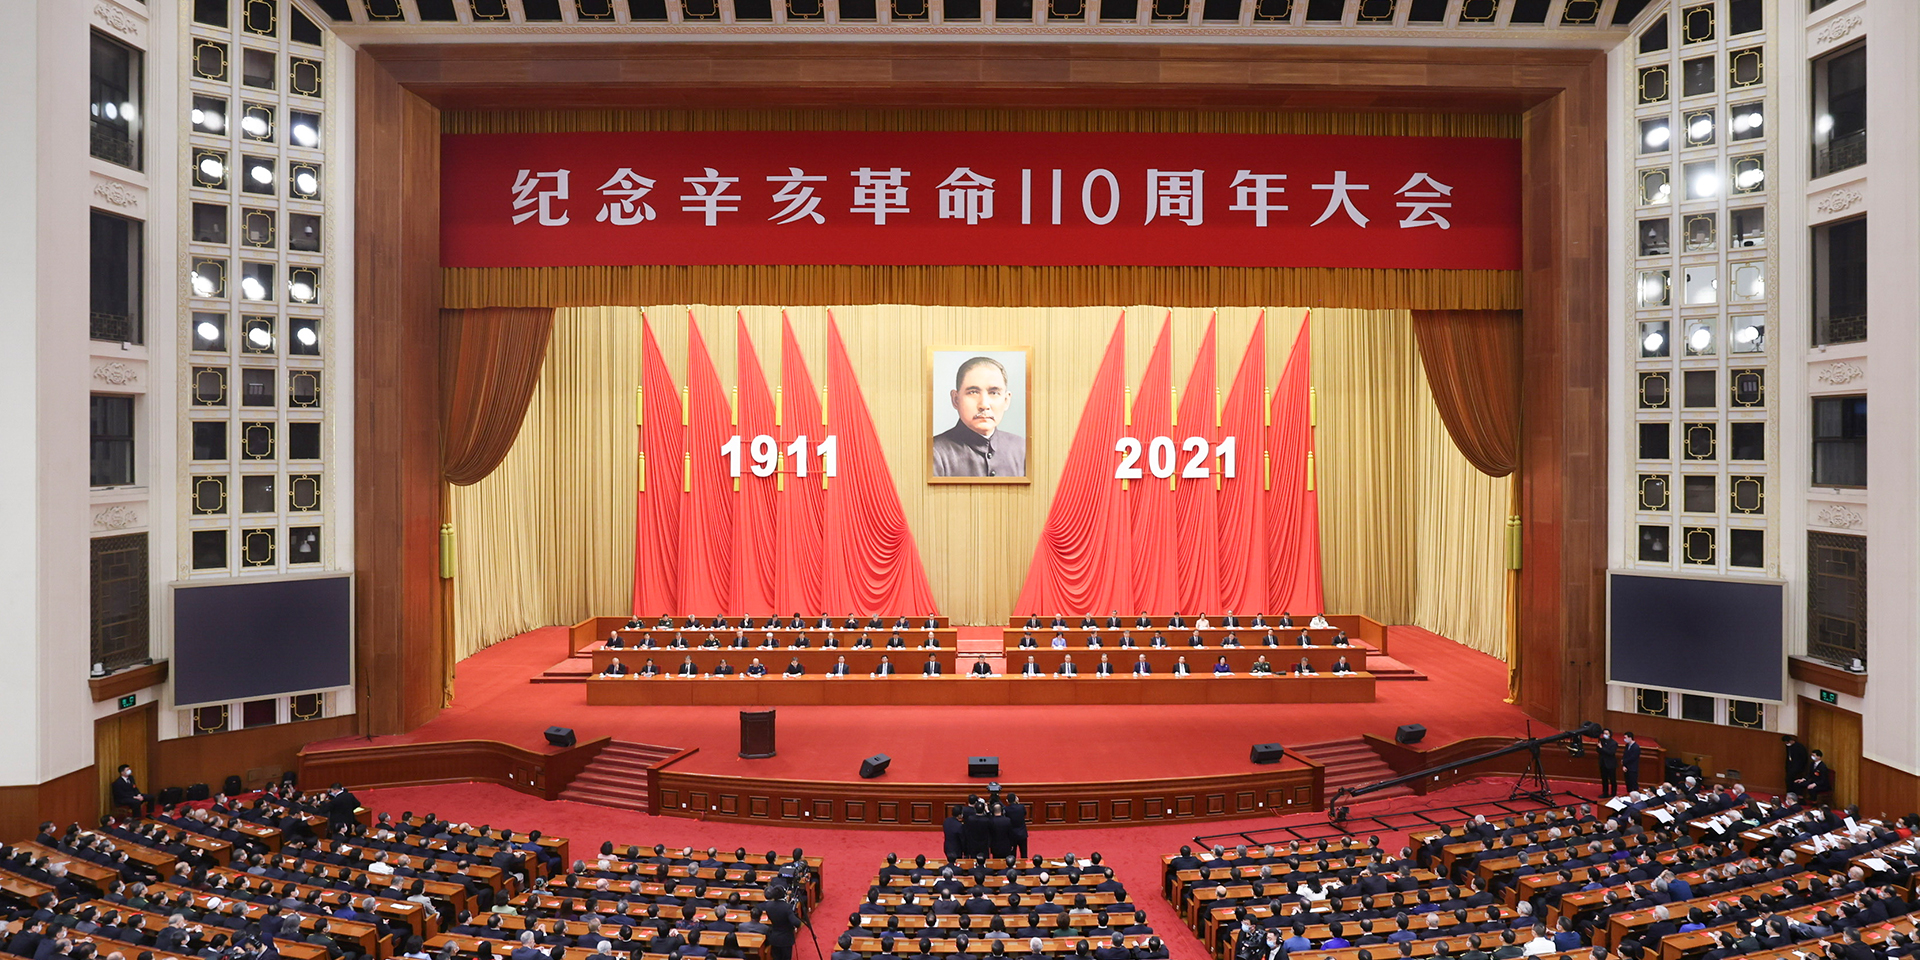 中国特色社会主义是实现中华民族伟大复兴的唯一正确道路。